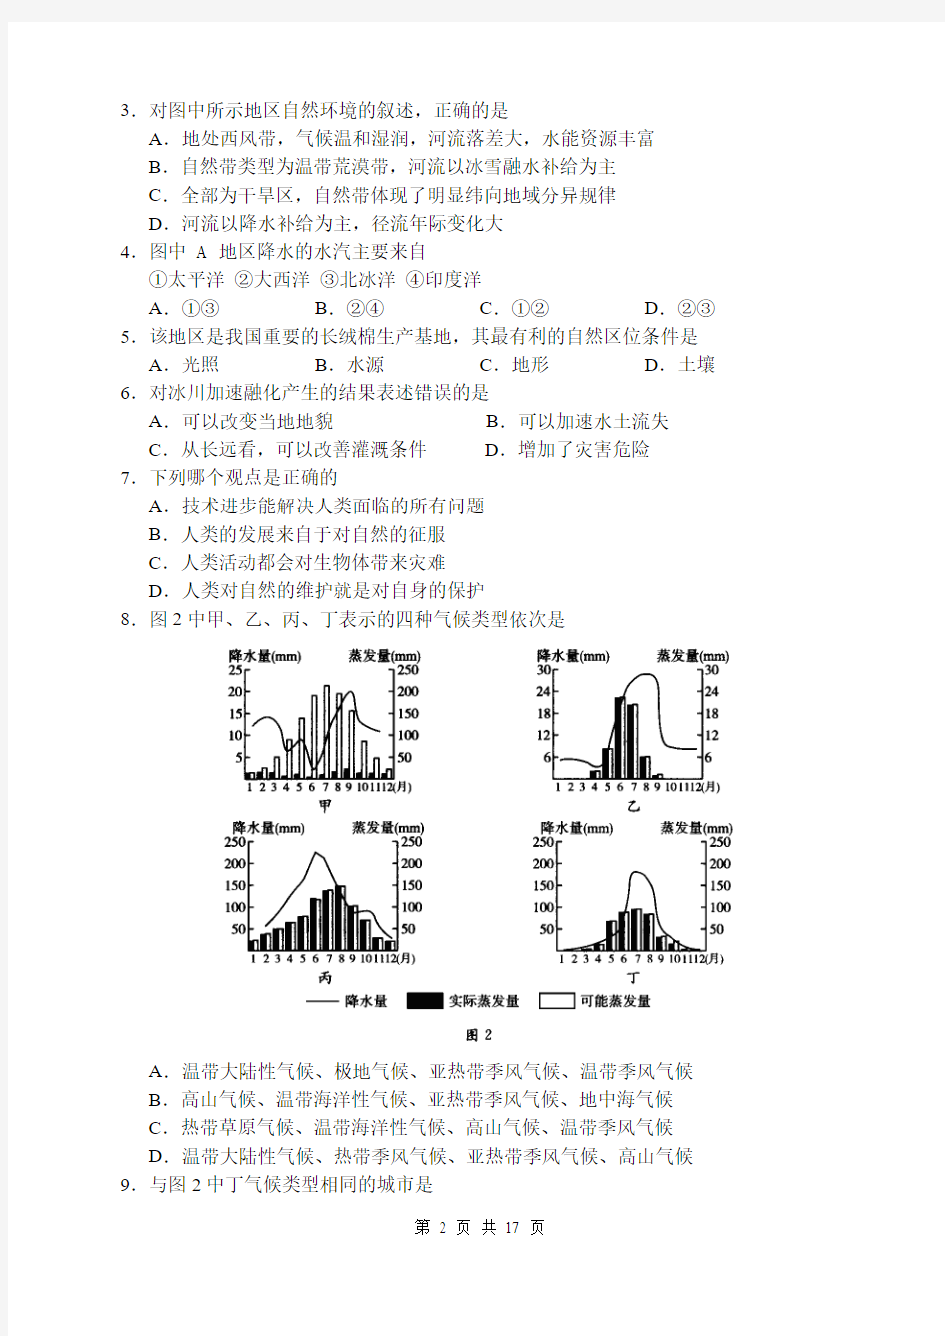 2006年高考试题广东卷文科综合试题以及参考答案